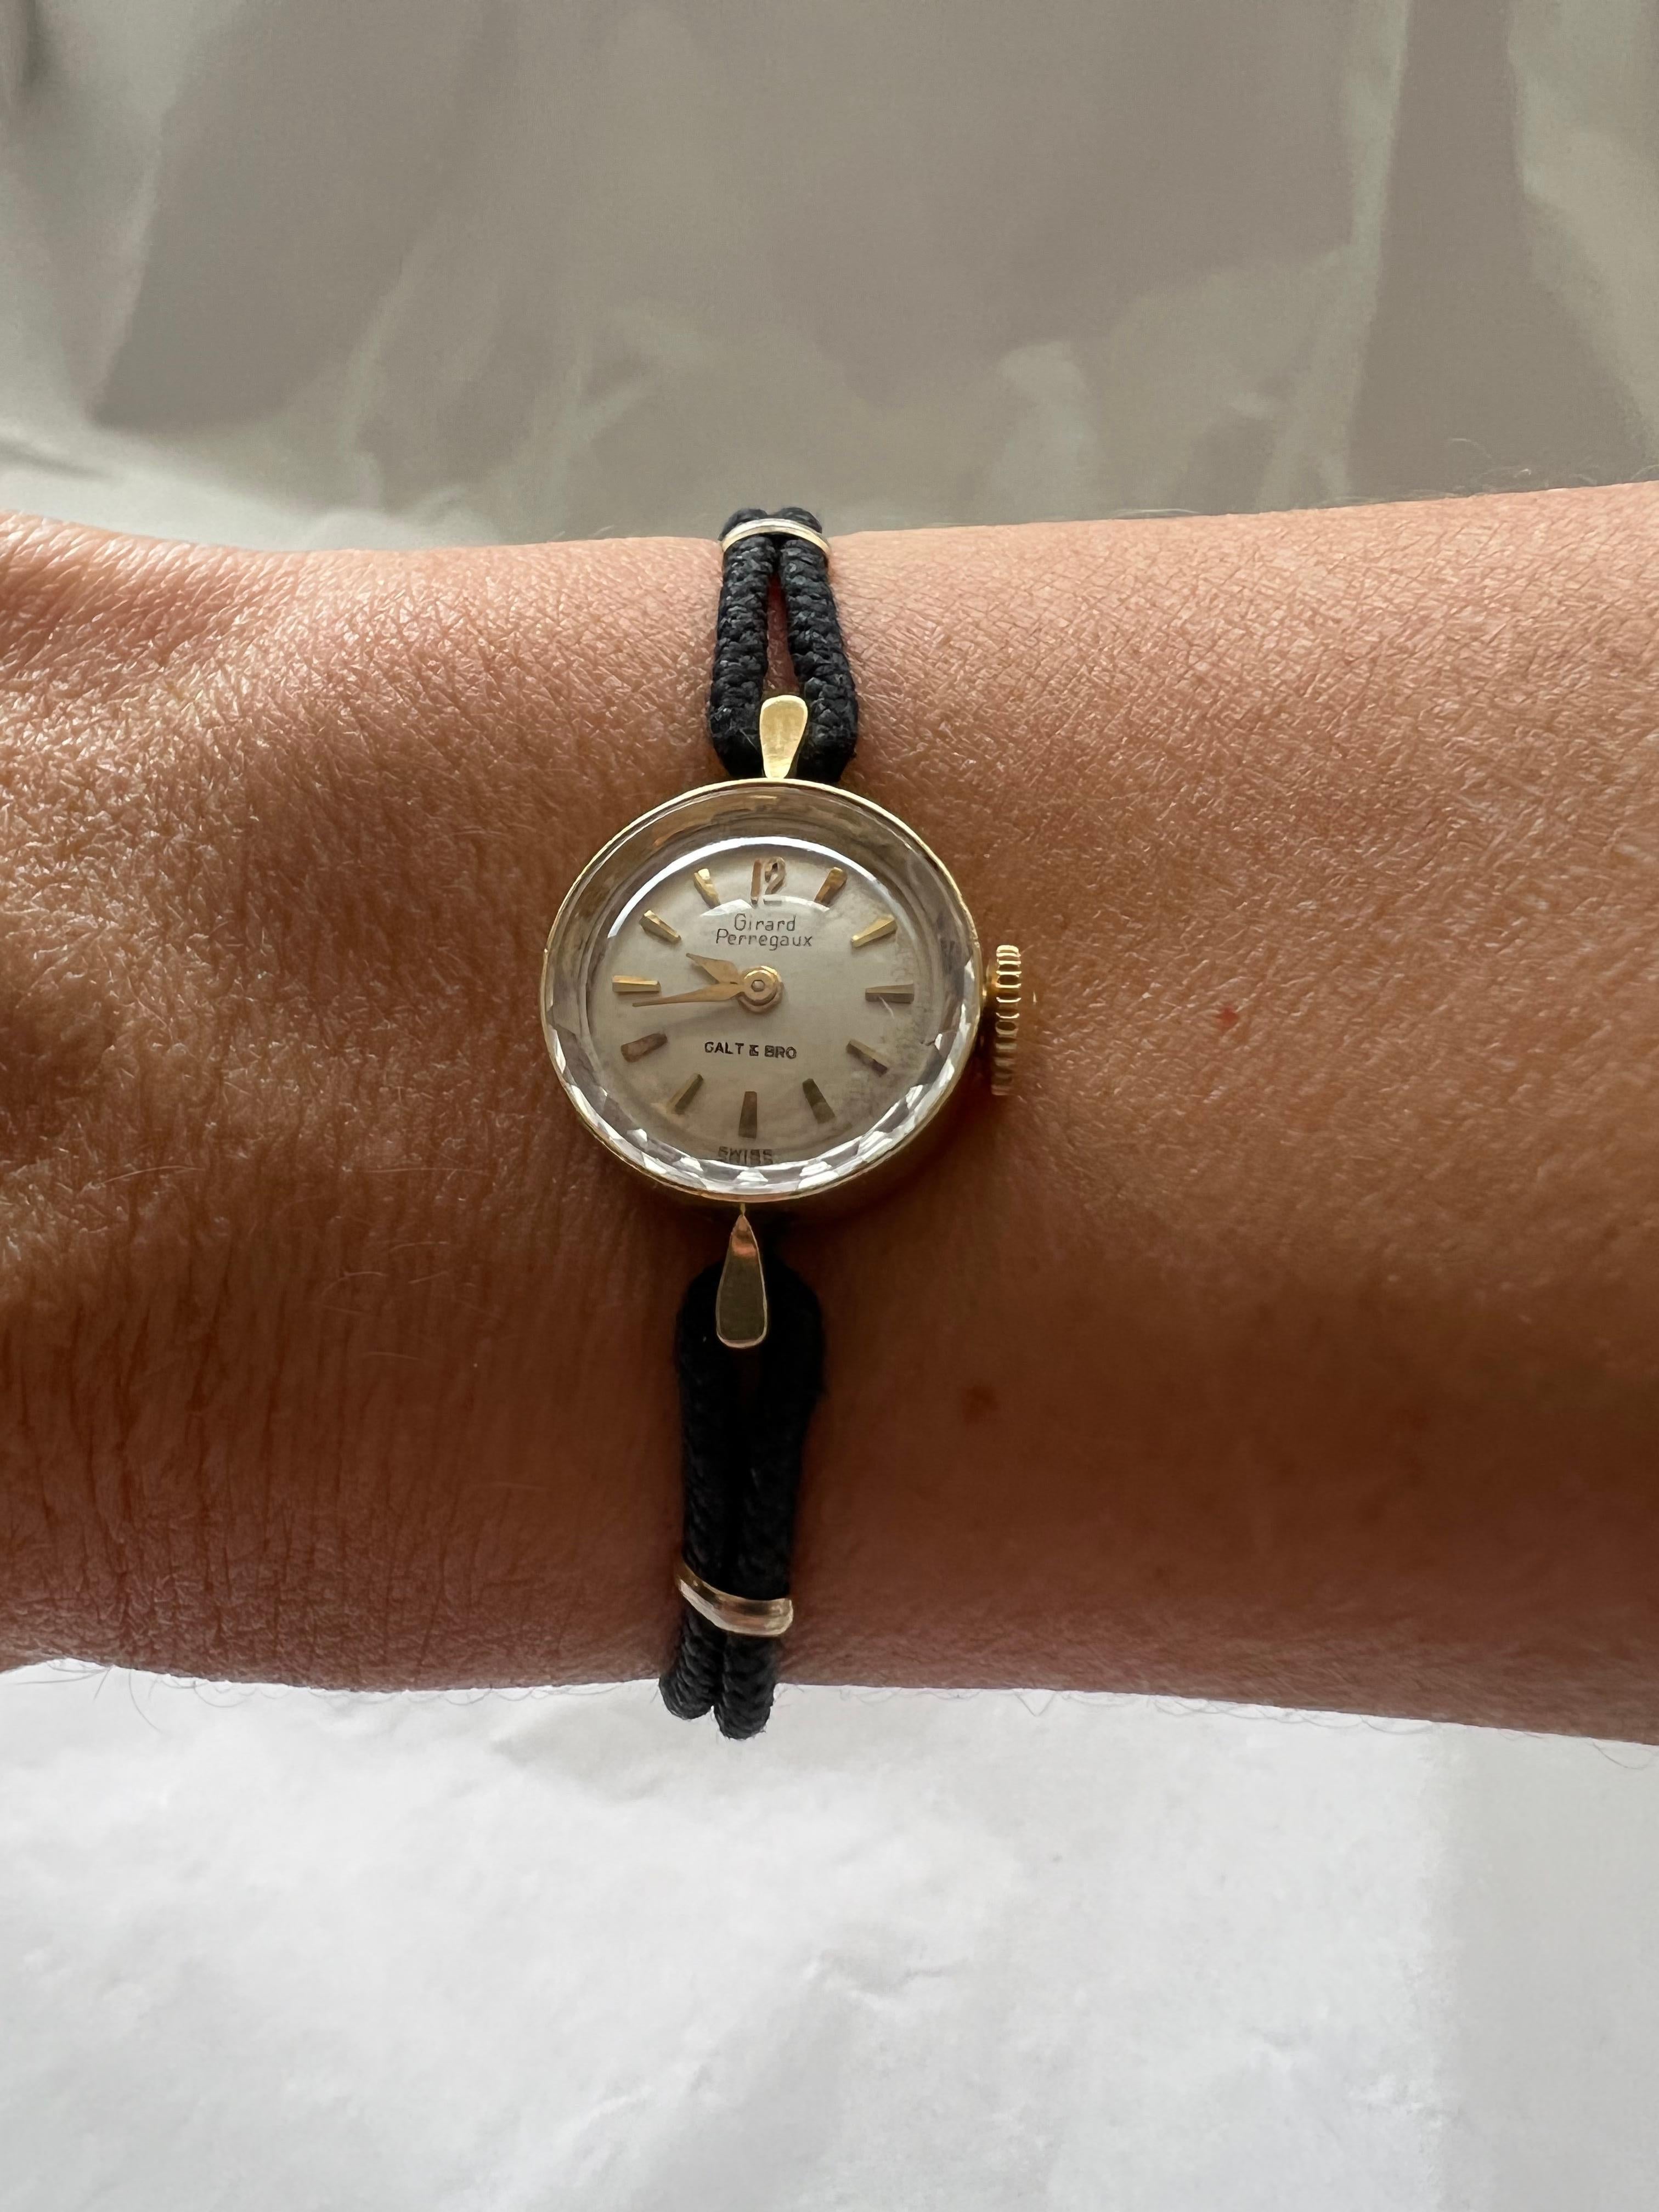 Antique Wristwatch Watch 14K Gold Case Galt Vintage Estate Item Find

Poids d'environ 0,50 oz 

Vendu tel qu'illustré - nécessite des réparations pour fonctionner